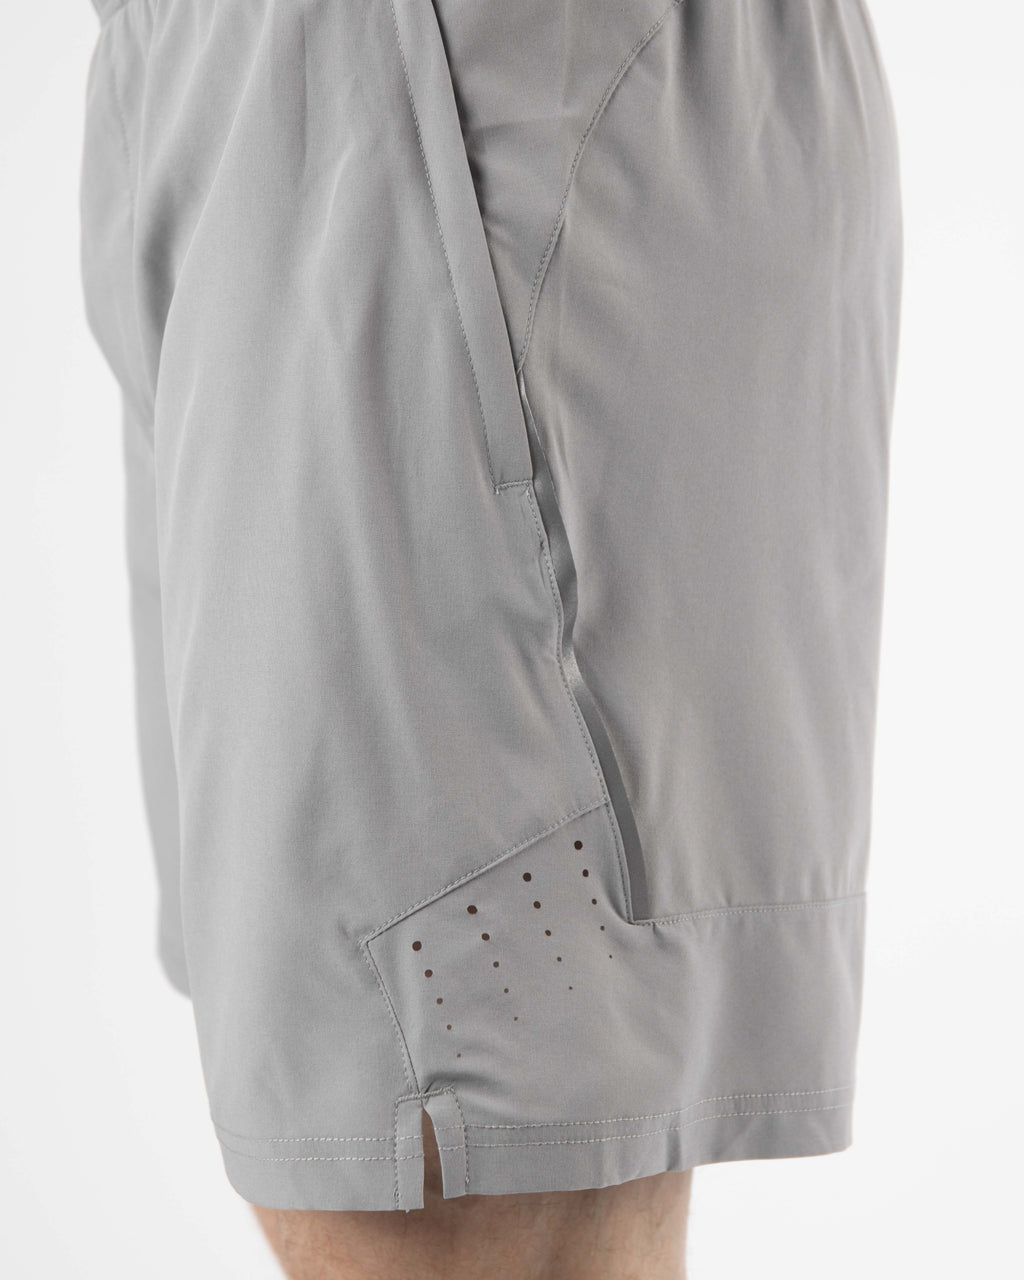 V2 6" Athletic Shorts ~ Silver